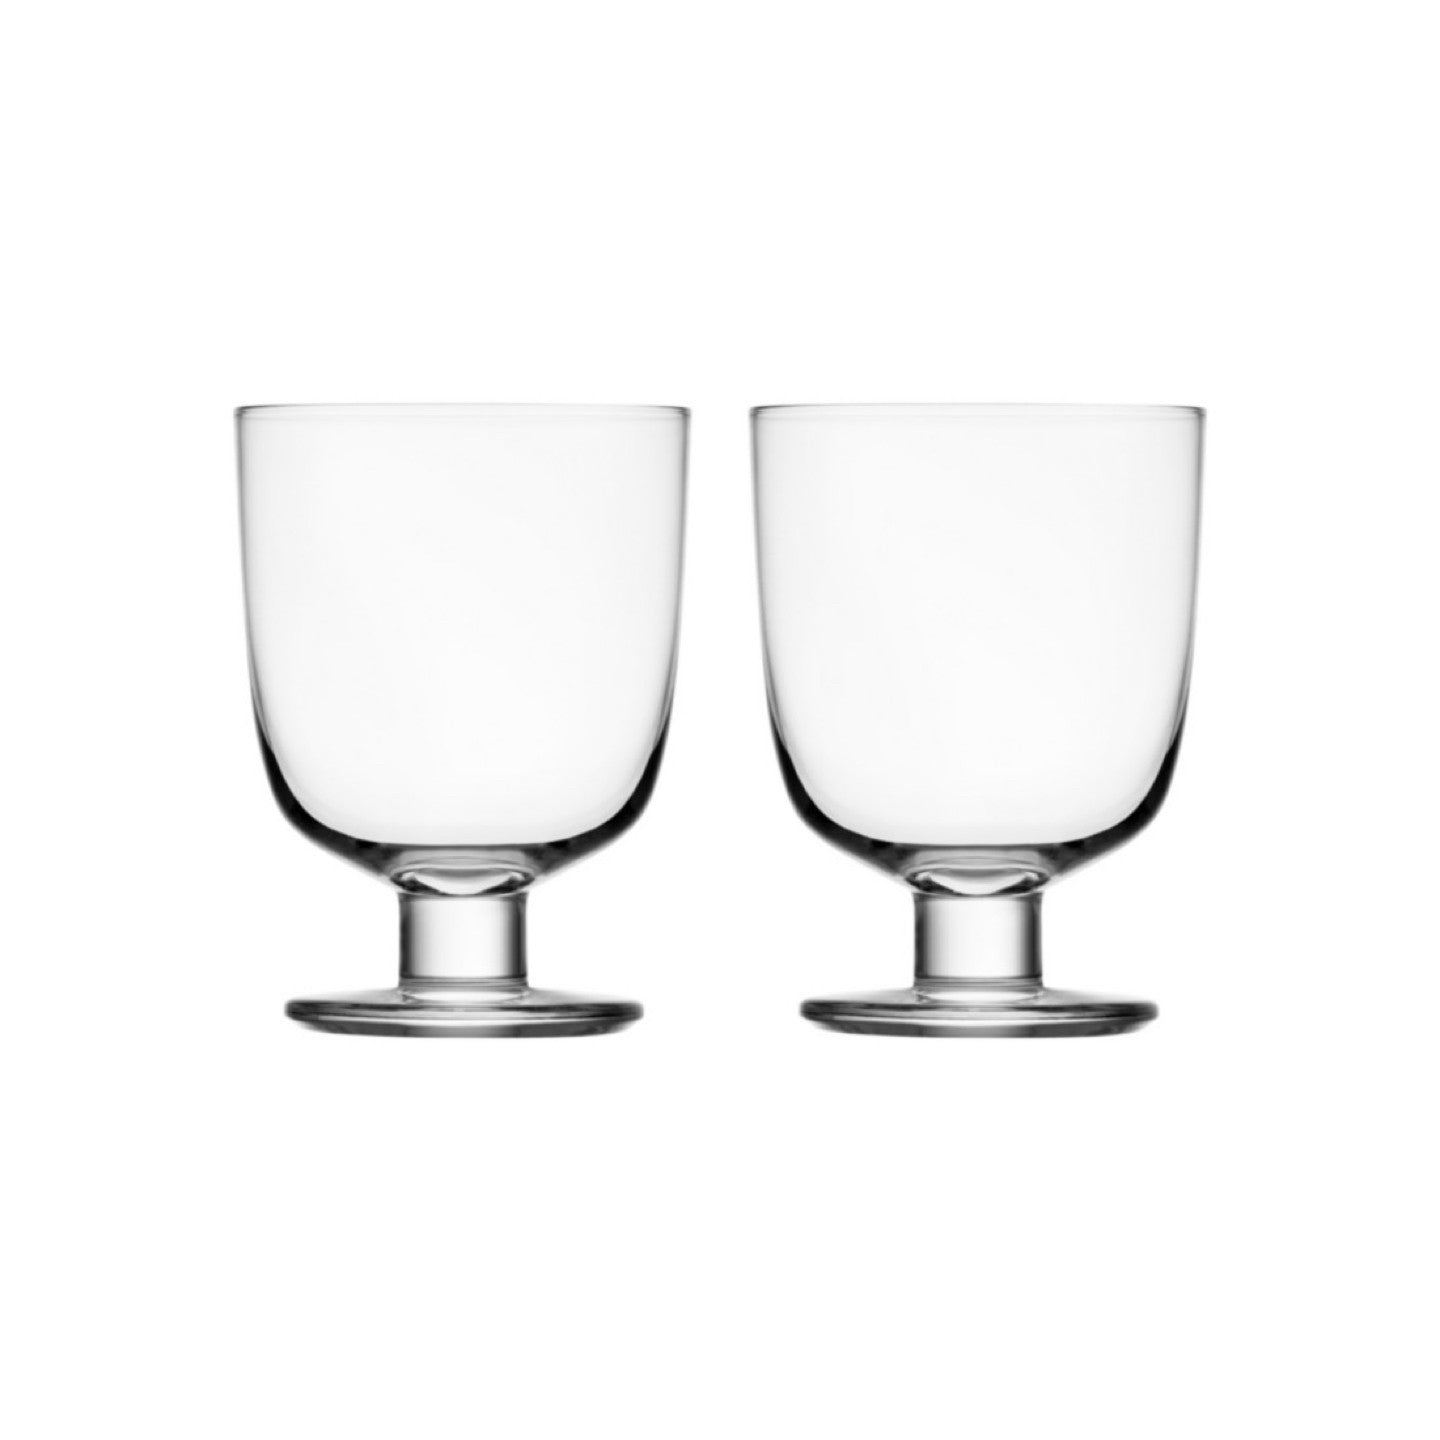 Lempi Set of 2 Glasses by Alfredo Haberli